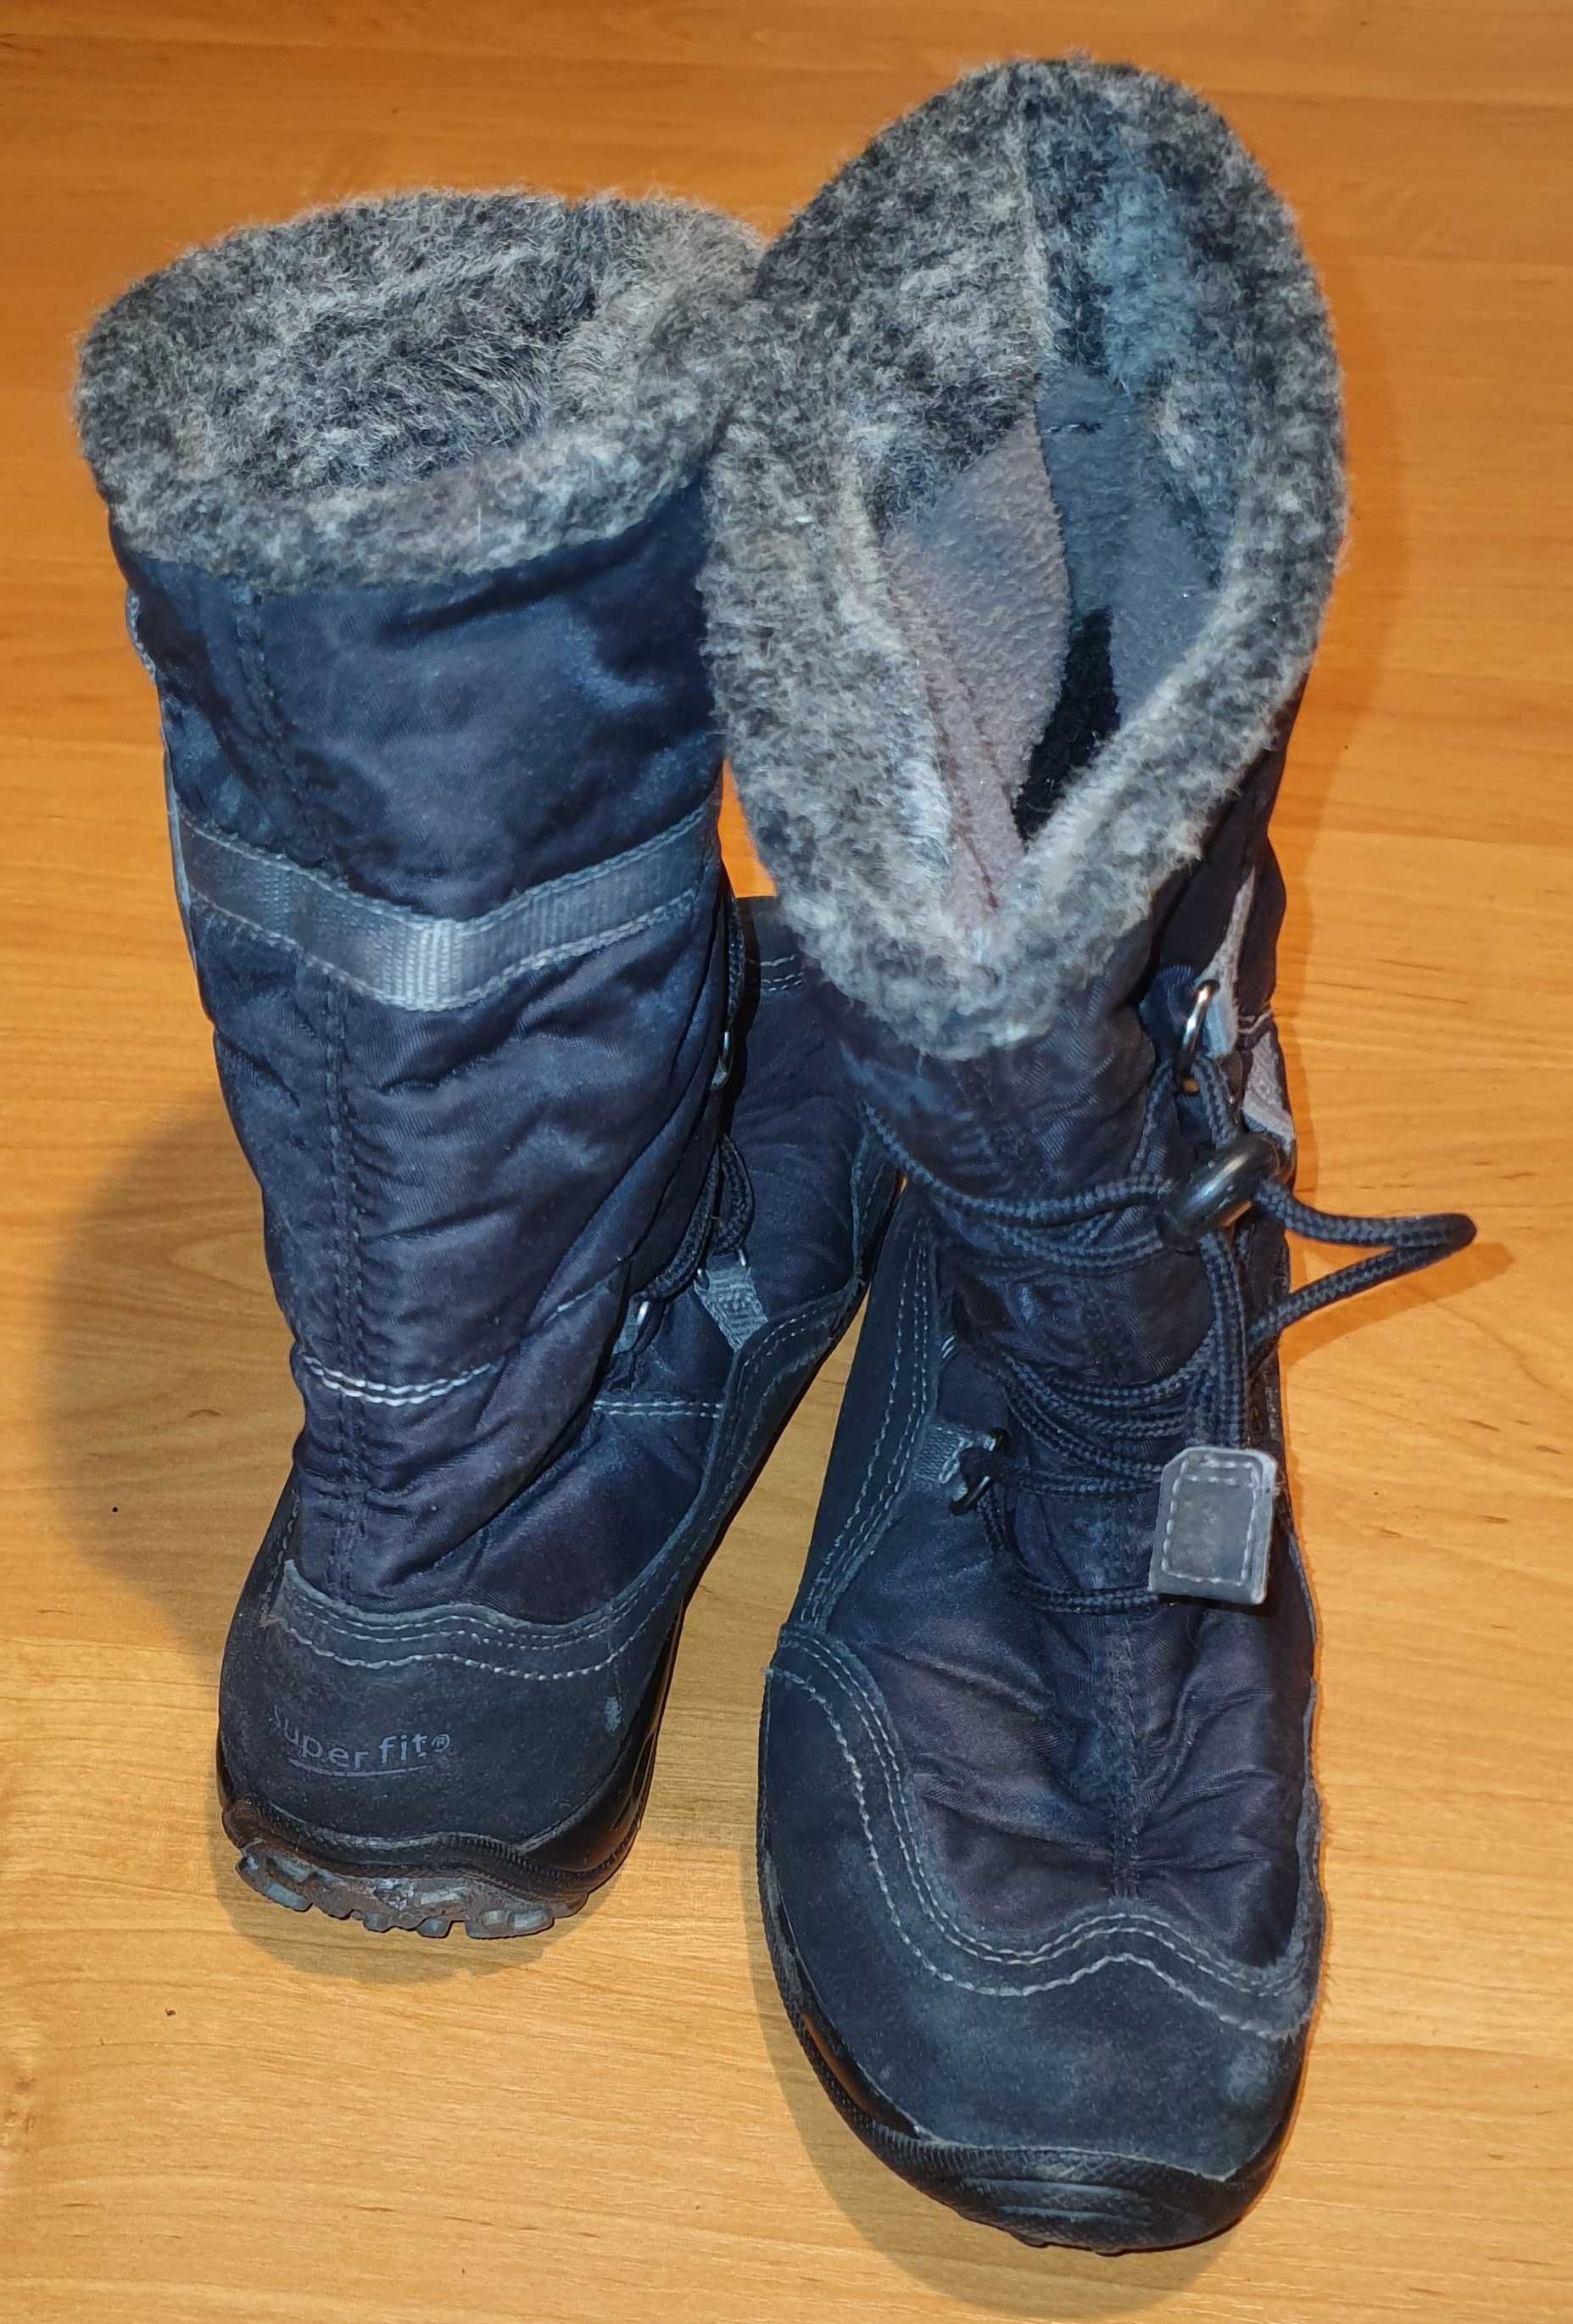 Kozaki, buty zimowe, śniegowce SUPERFIT, rozm. 35 (dł. wkładki 23 cm)